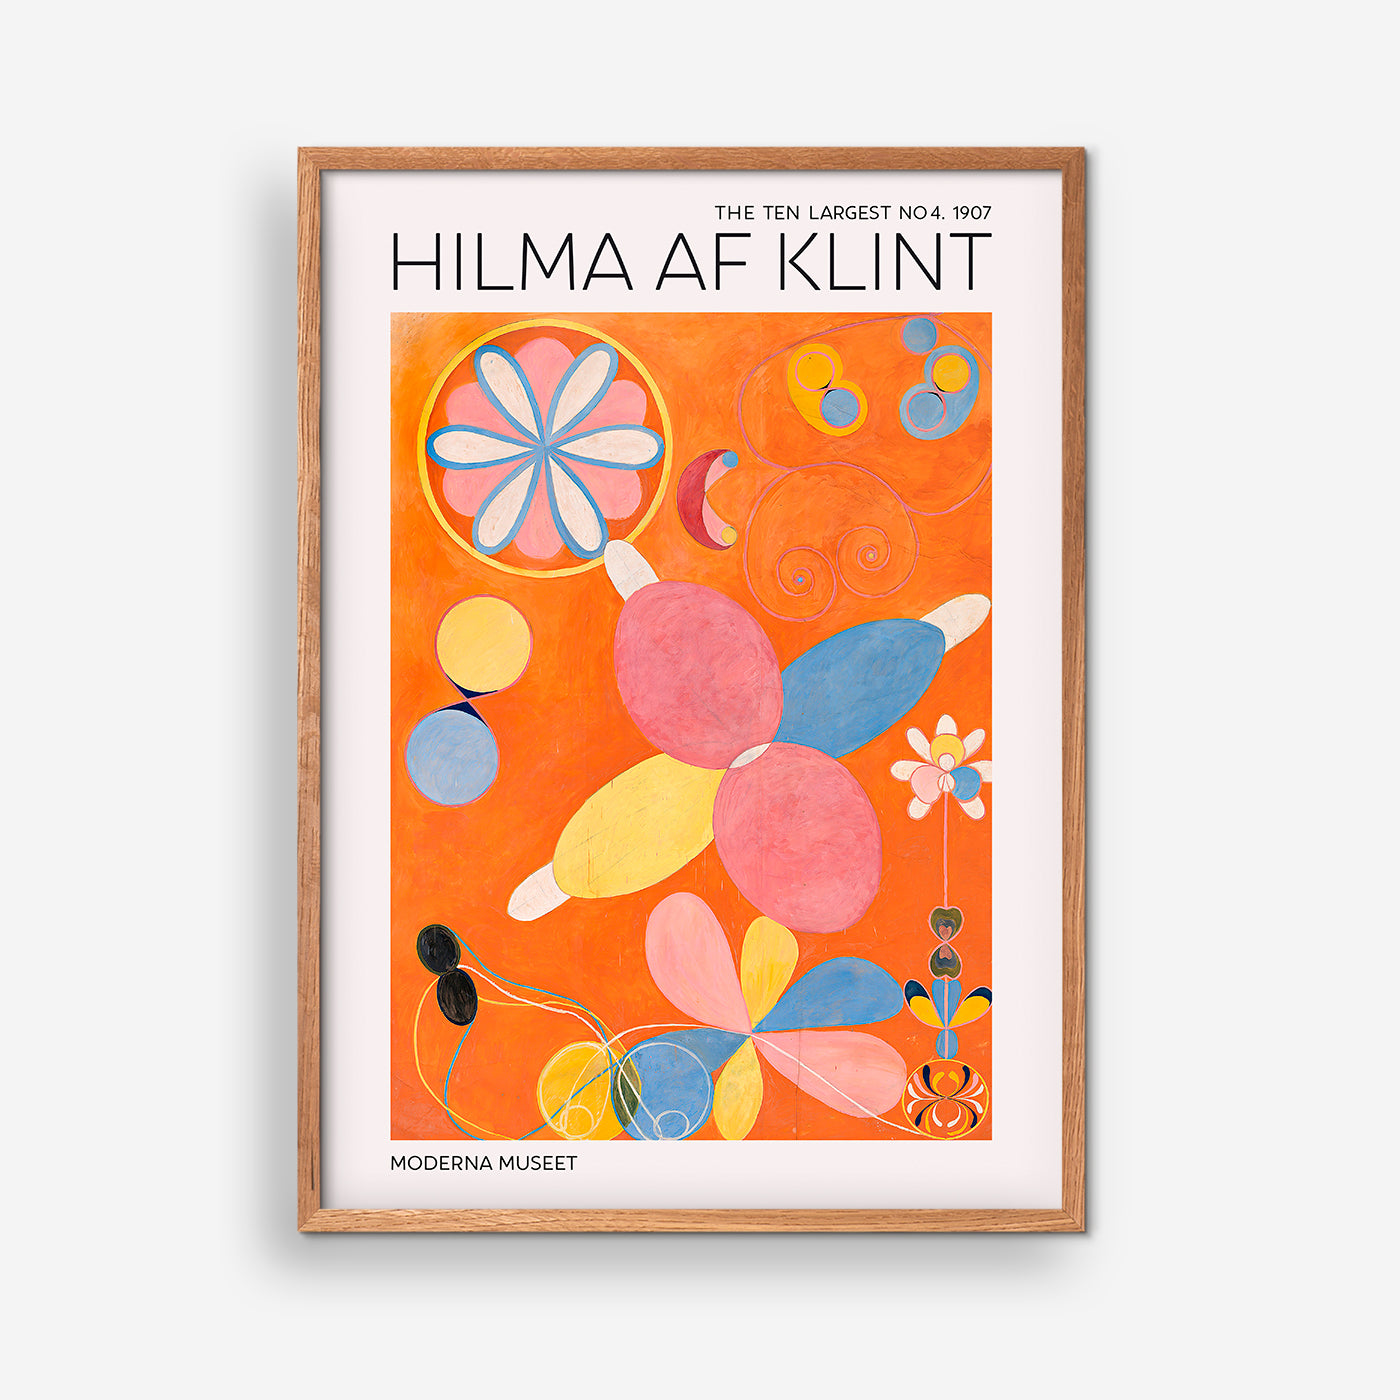 The Ten Largest No. 4 - Hilma Af Klint